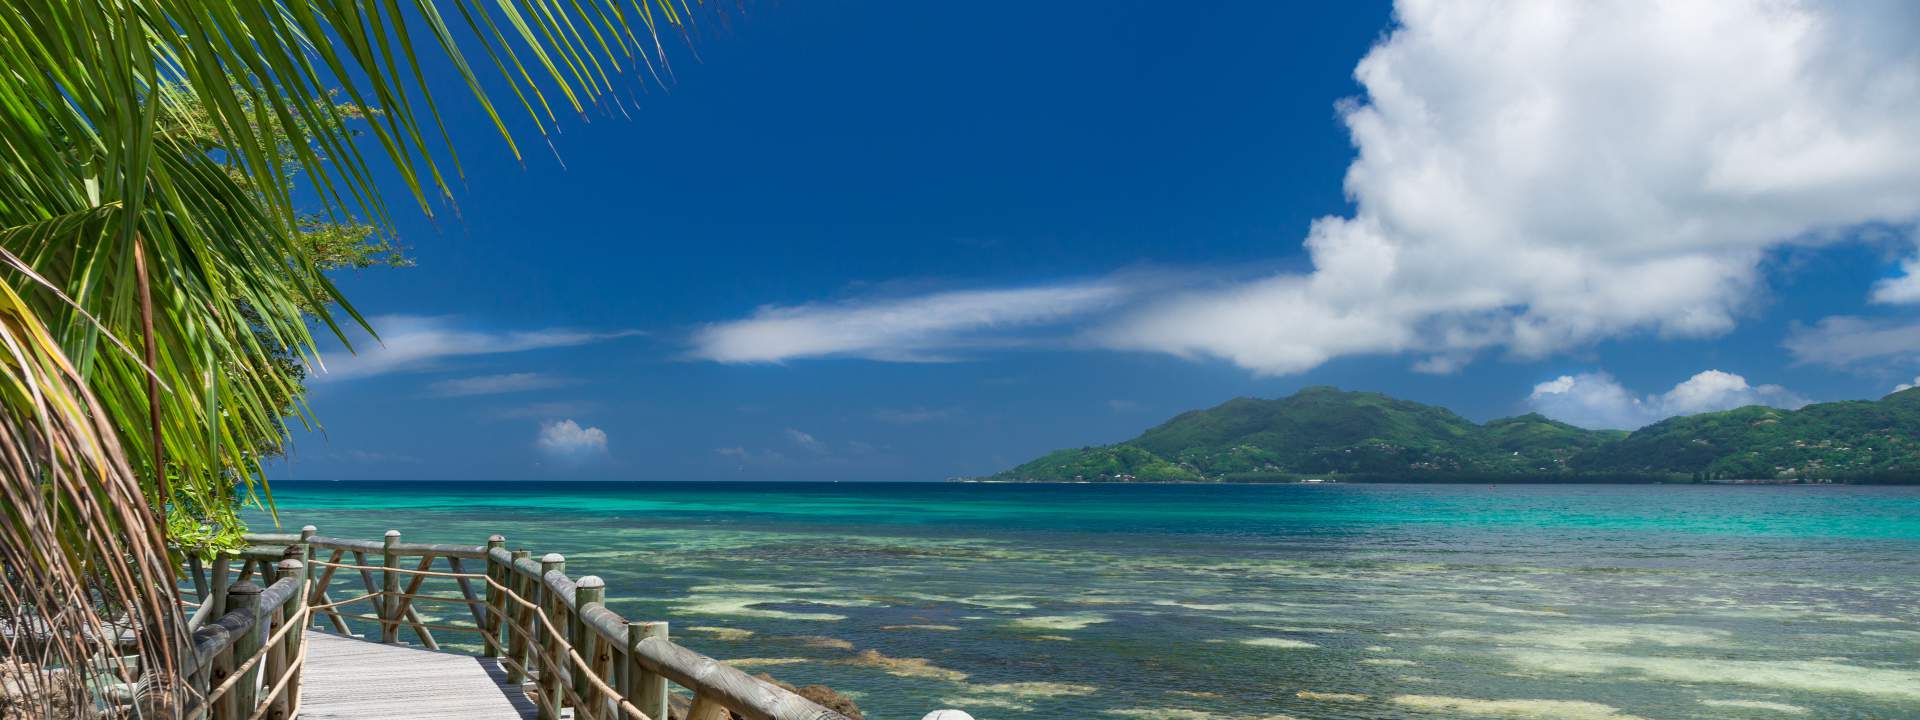 La vostra crociera alla cabina in catamarano alle Seychelles